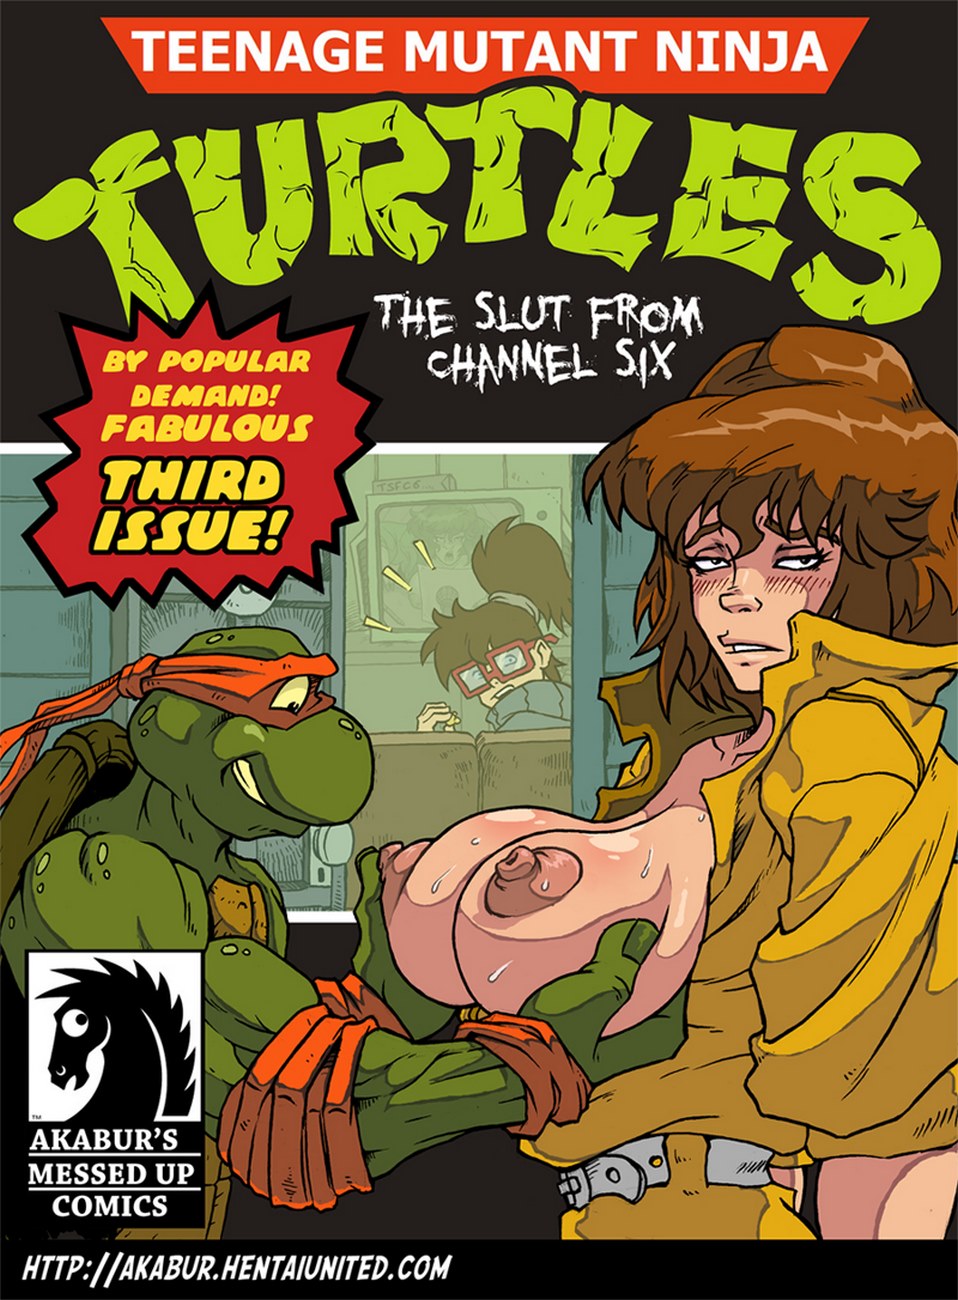 wojownicze żółwie ninja w dziwka Od kanał Sześć